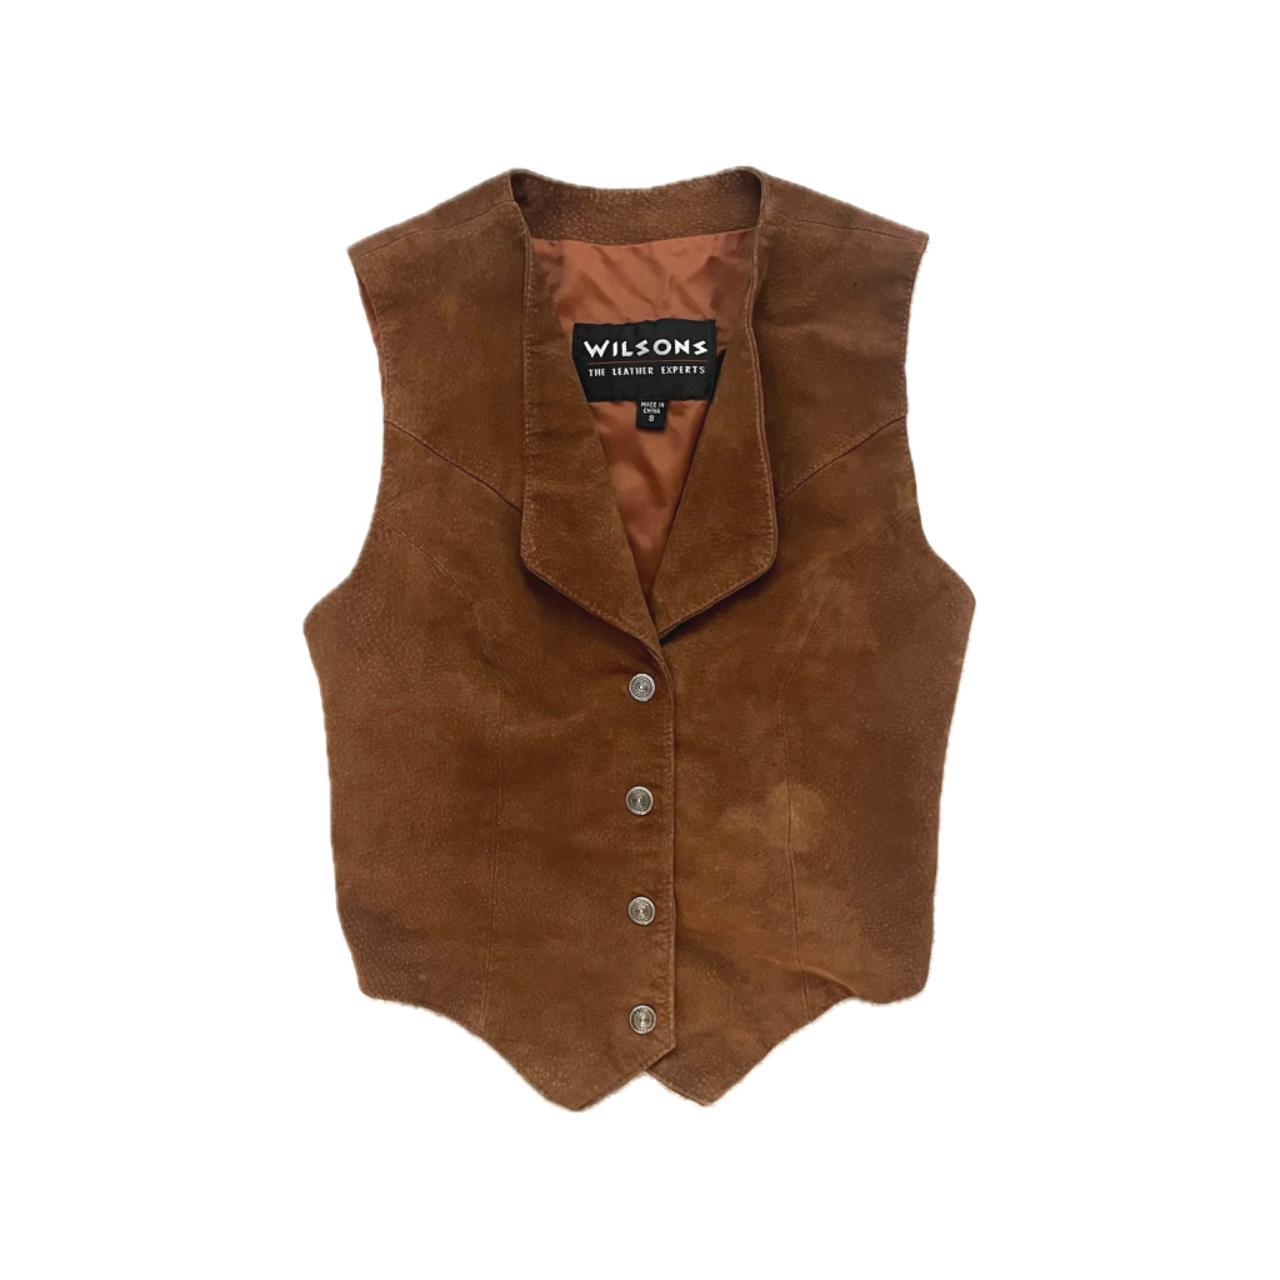 Wilson’s Leather Women's Brown Vest